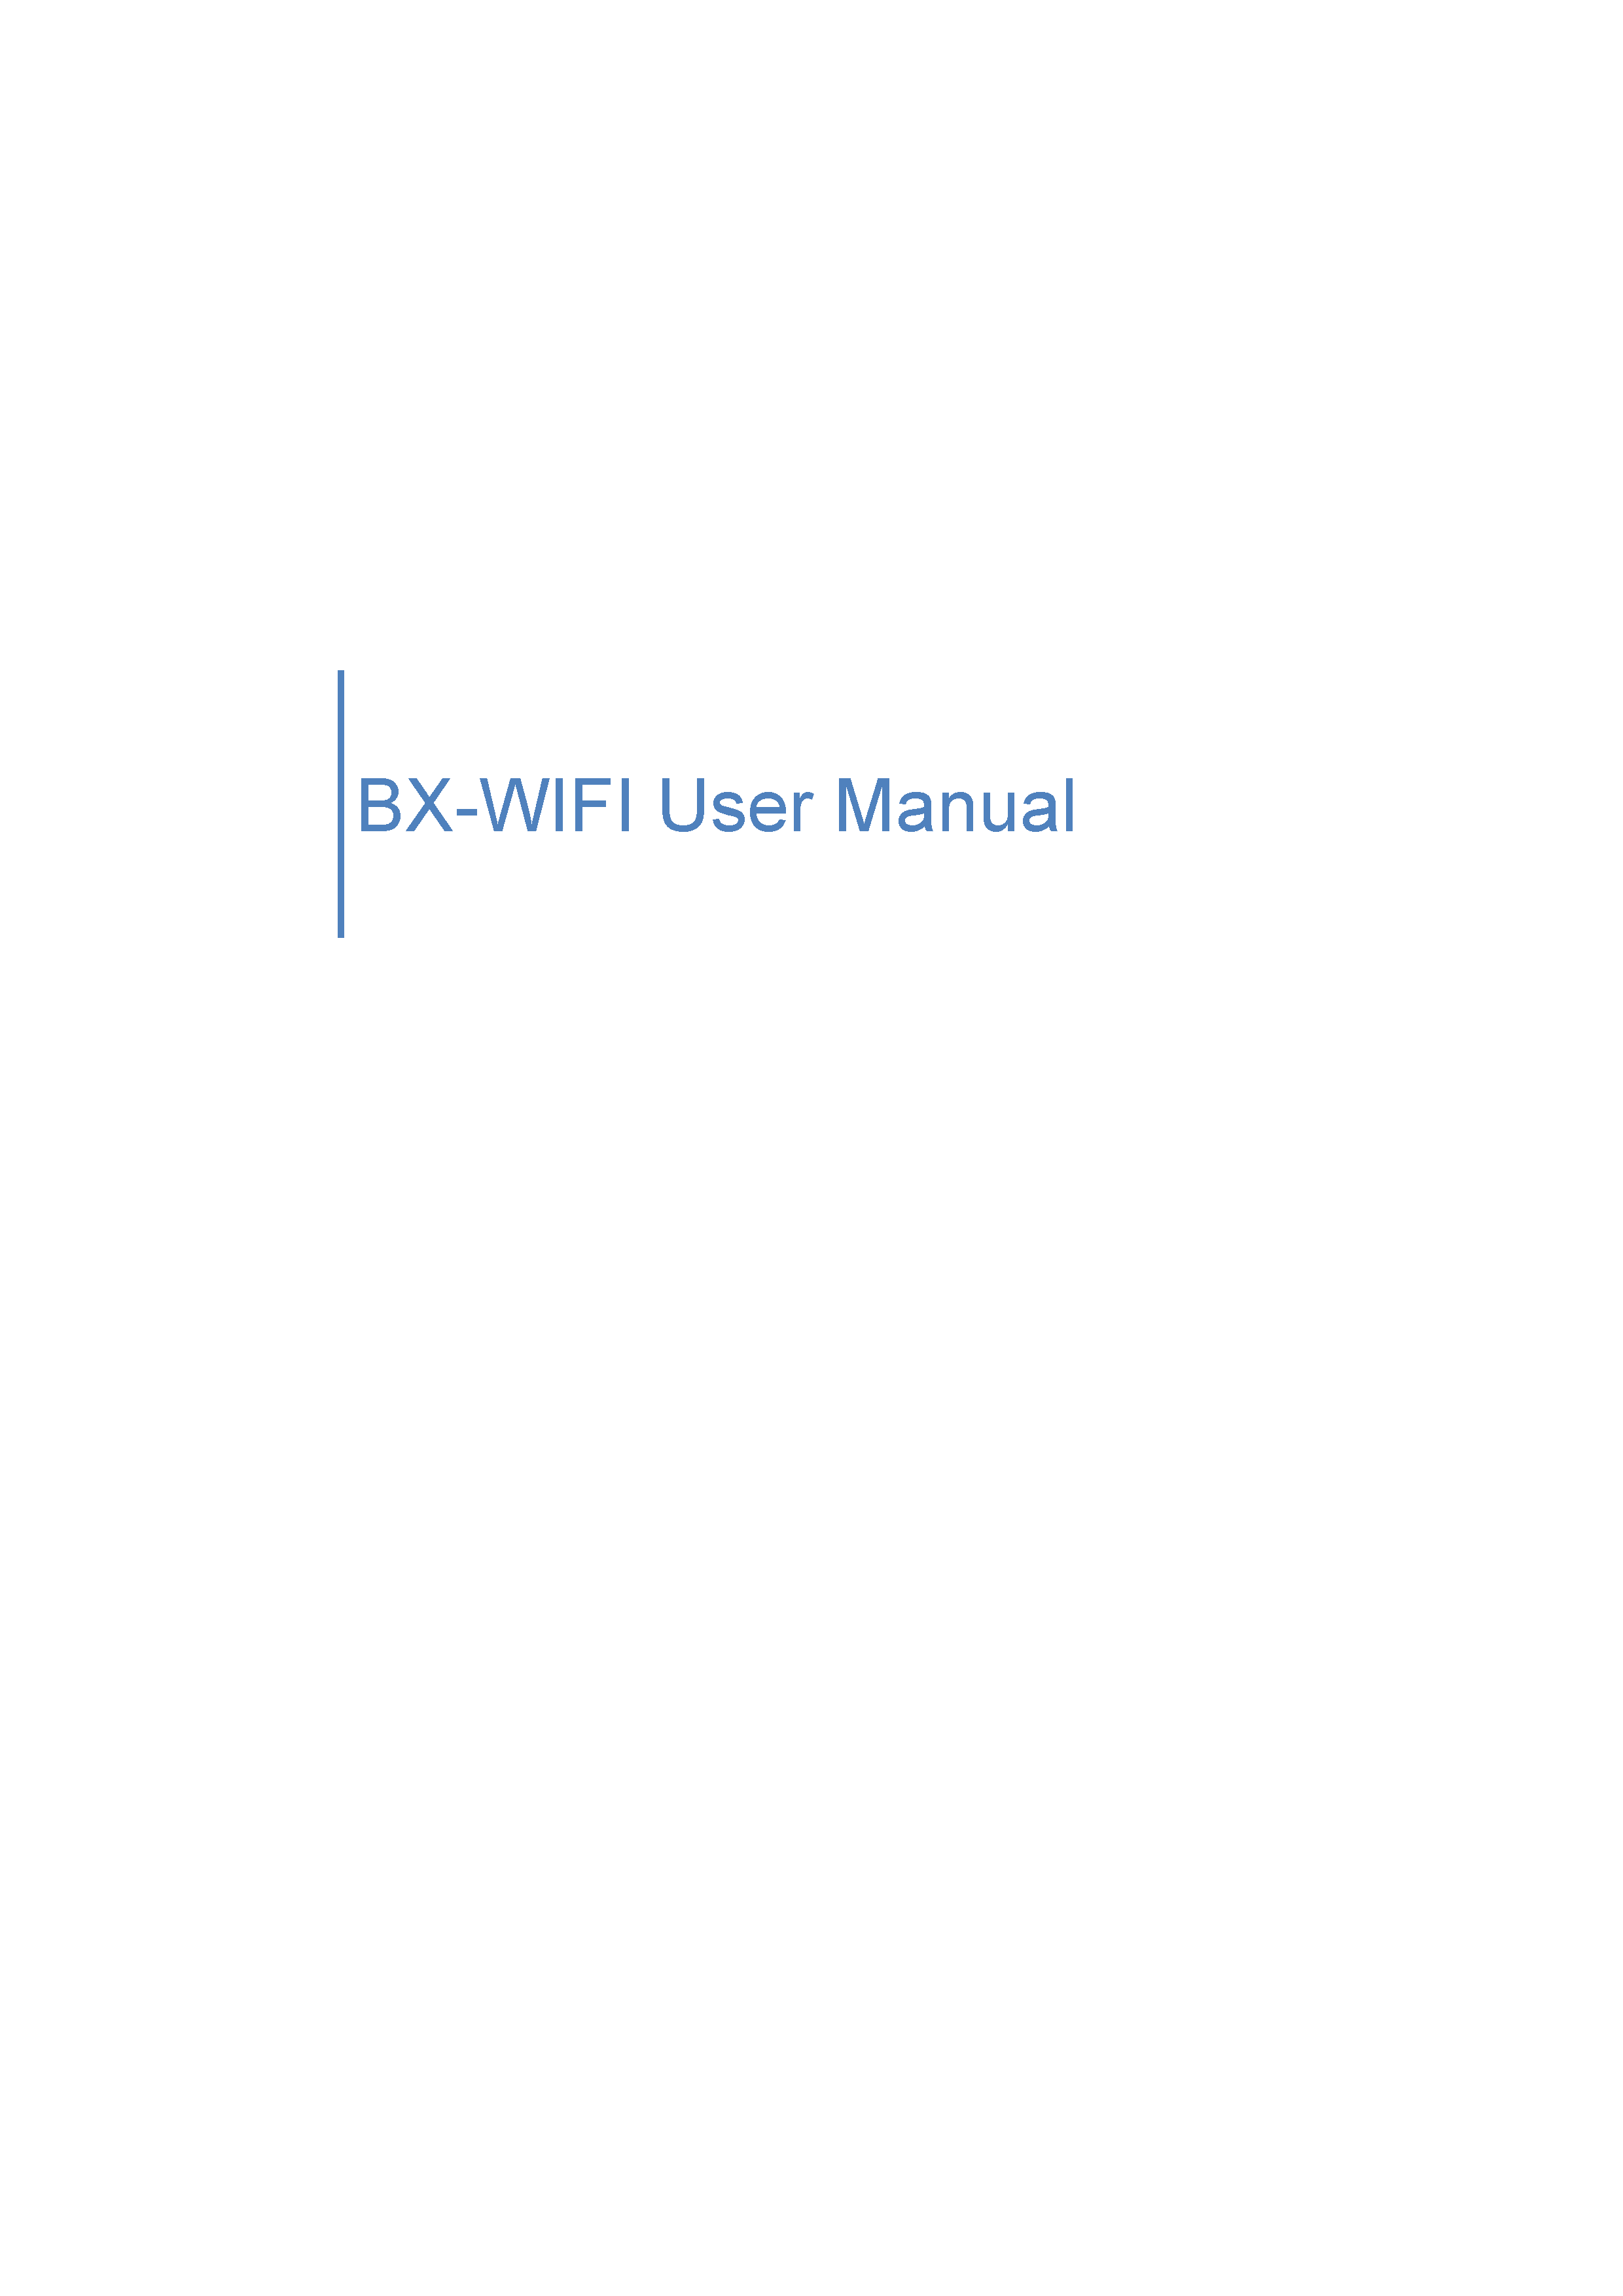 BX-WiFi